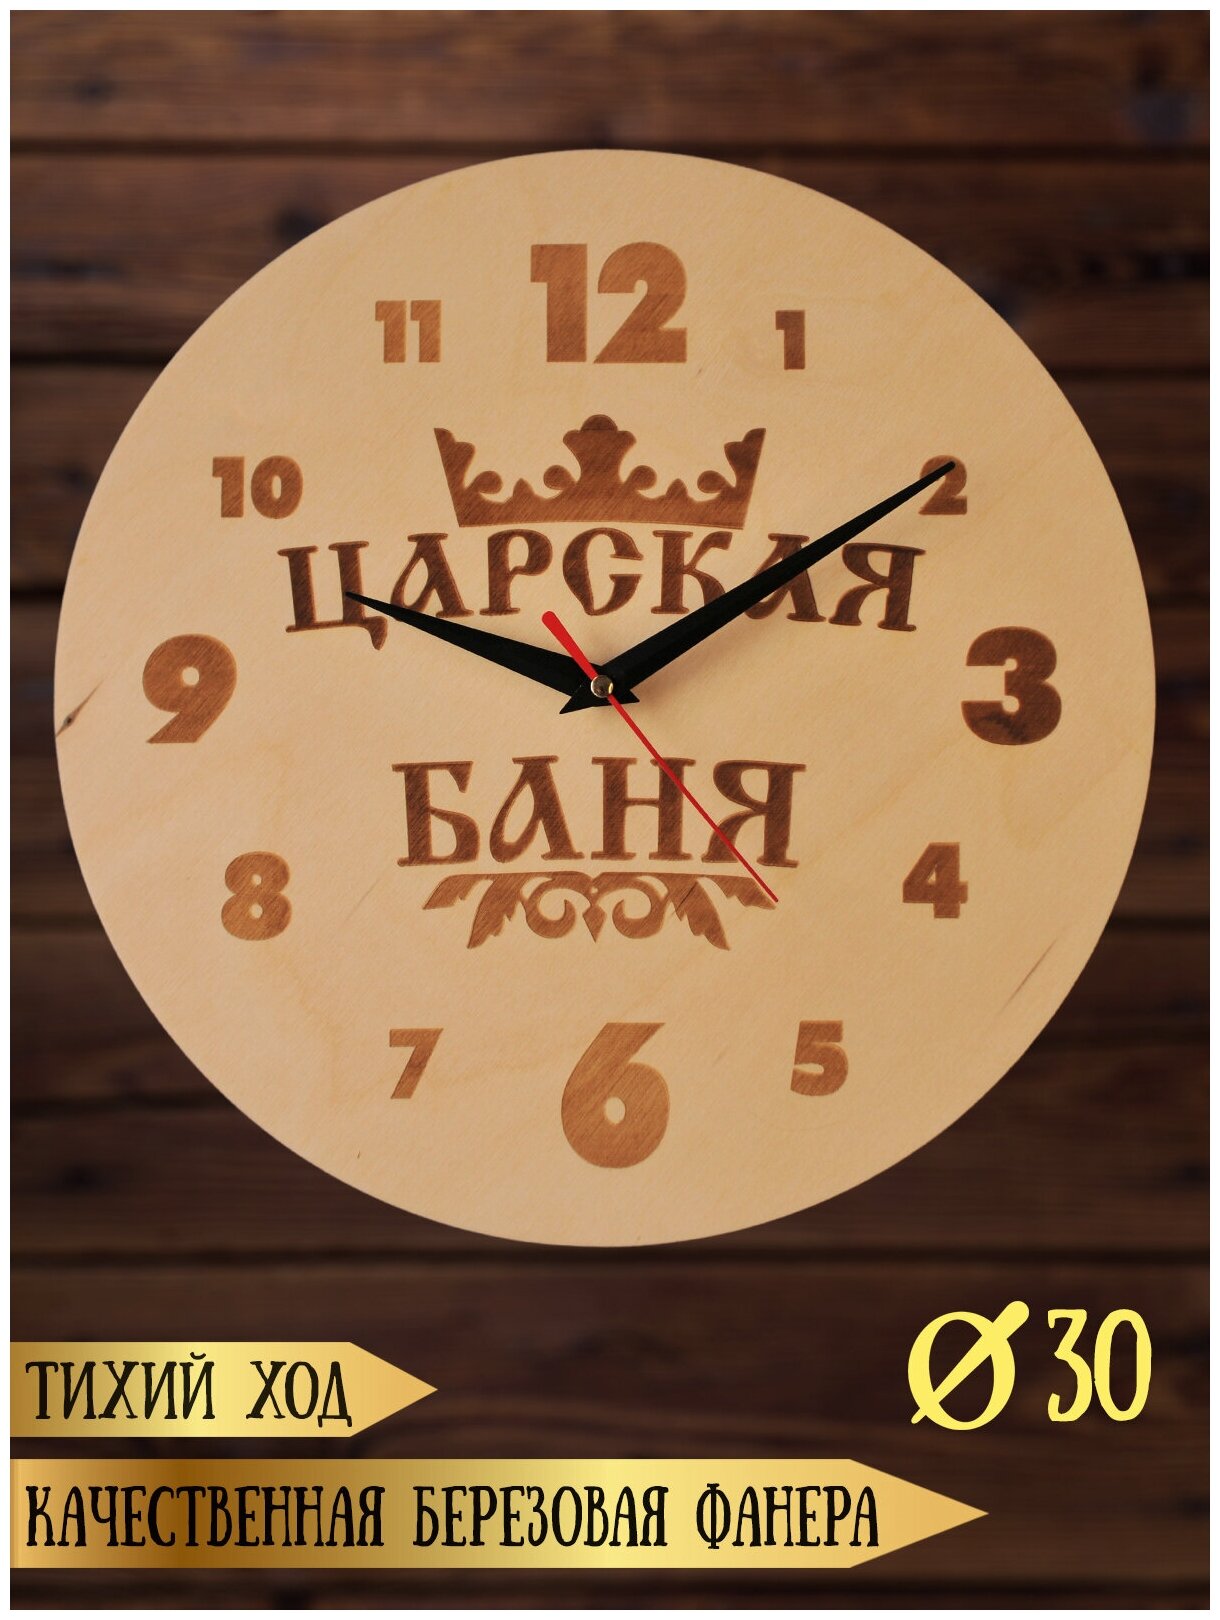 Часы в сауну баню (предбанник) настенные RiForm с гравировкой "Царская баня" 30 см